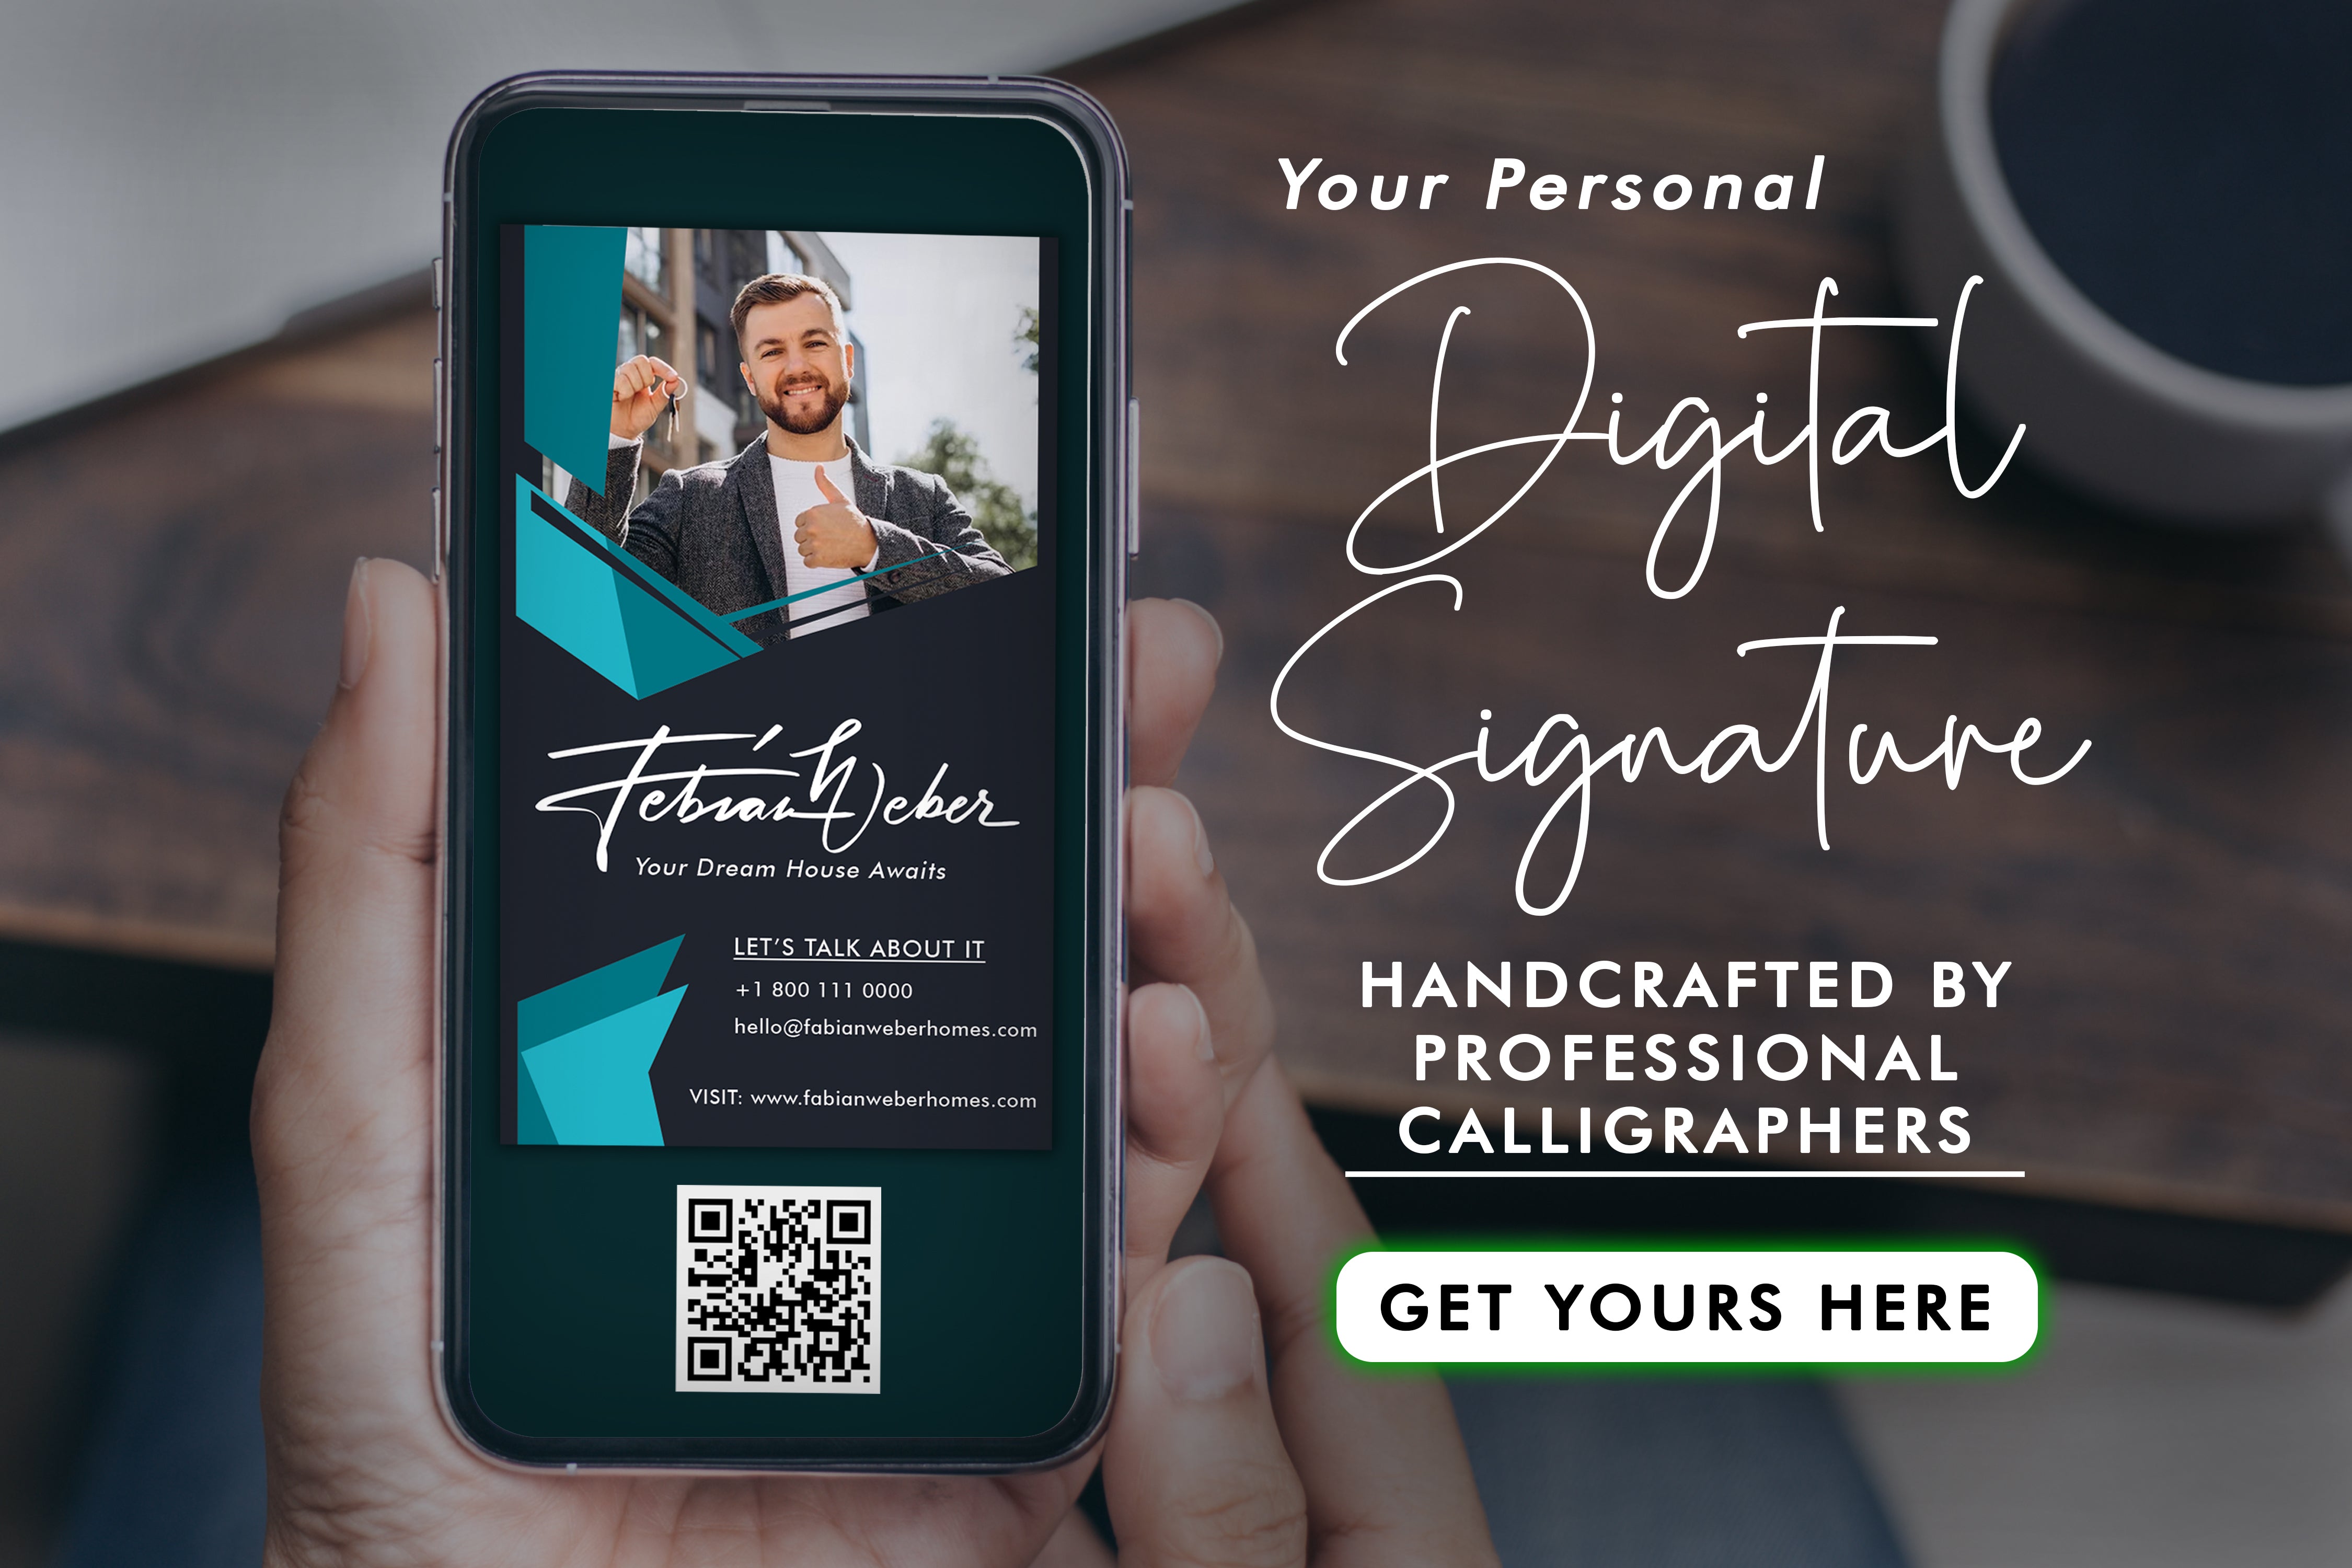 Îmbunătățiți brandingul cu o ștampilă digitală versatilă care oferă autenticitate și personalizare. Aflați cum să vă îmbunătățiți imaginea de afaceri.